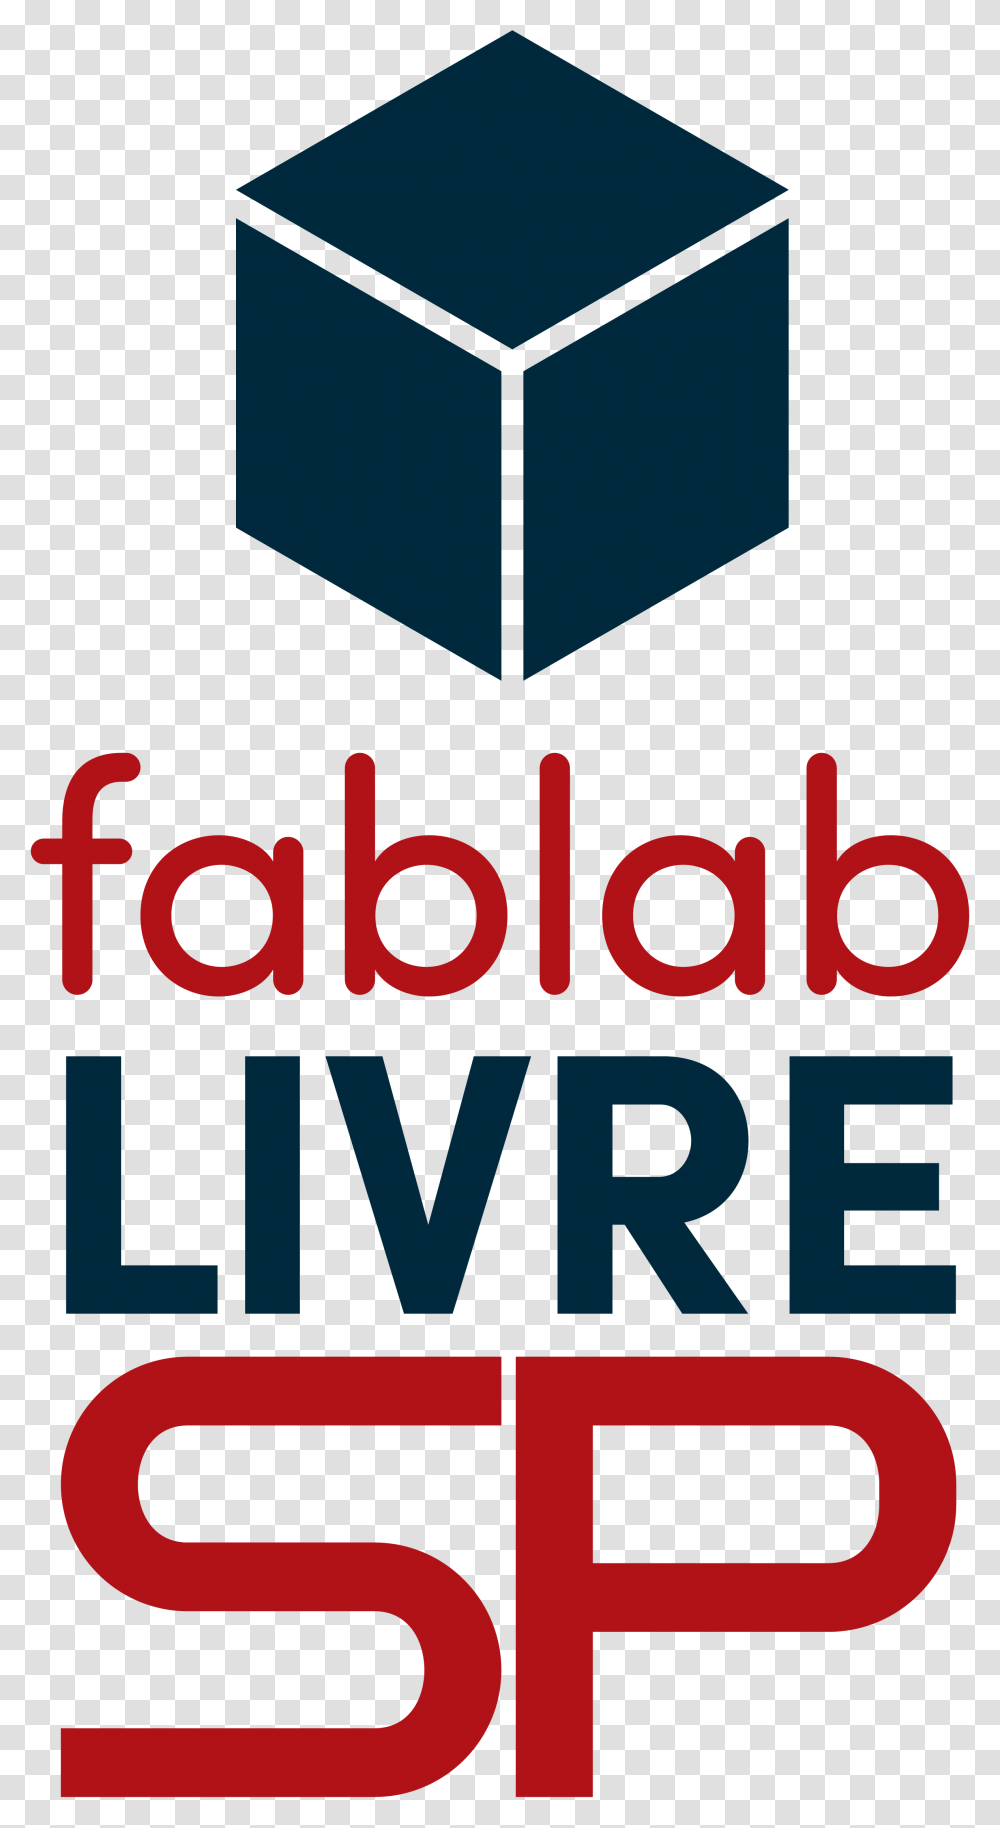 3d Cube Logo Fab Lab Livre Sp, Label, Word Transparent Png